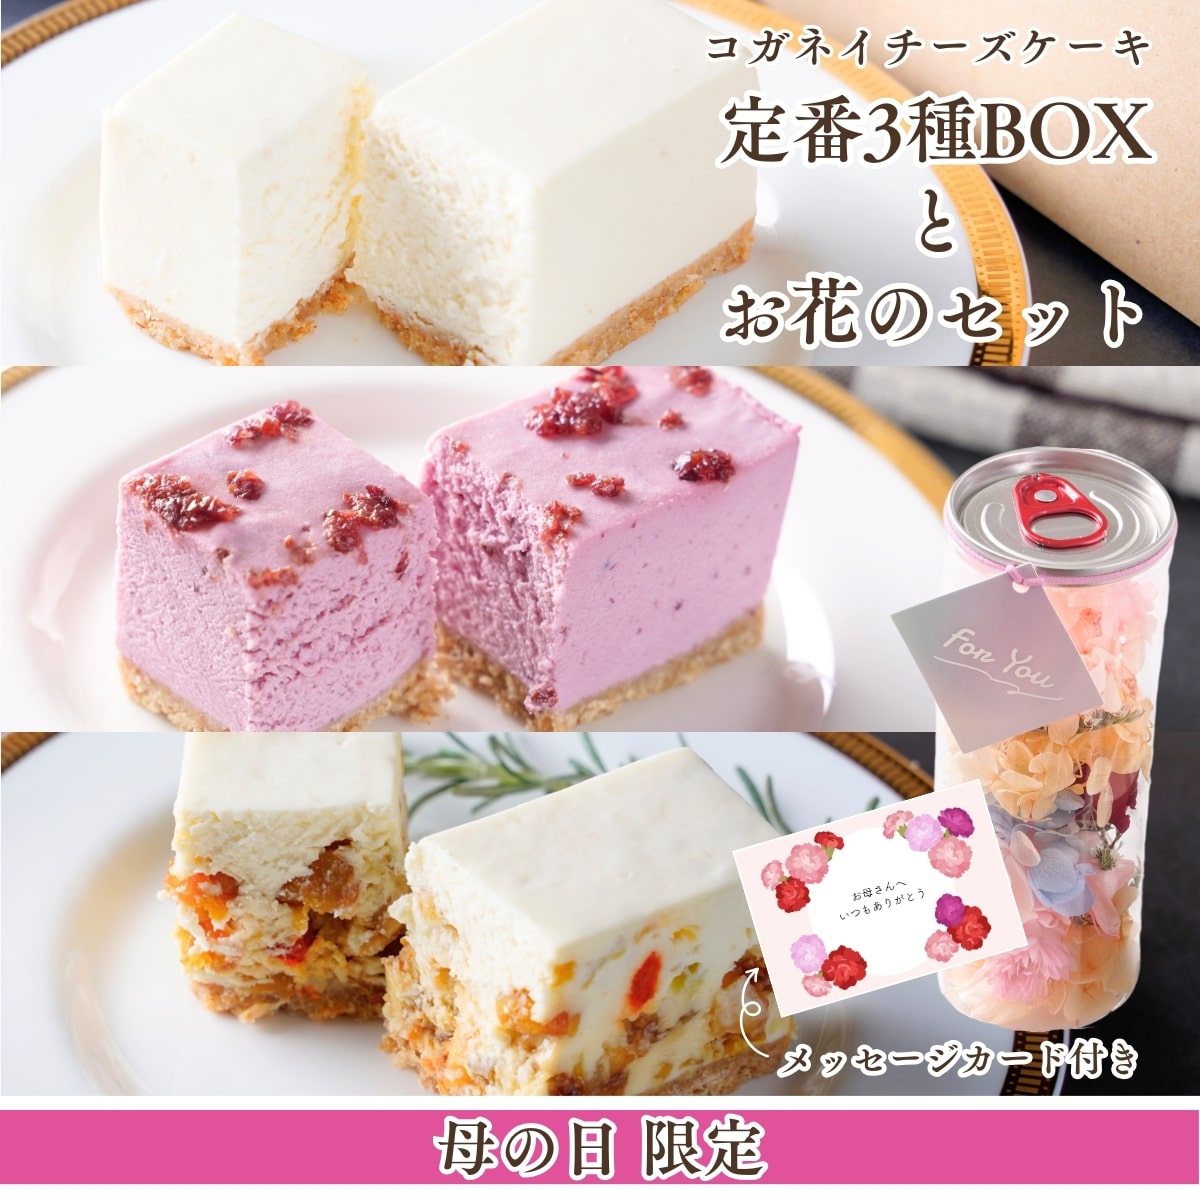 【数量限定】母の日限定！コガネイチーズケーキ定番3種BOXとお花のセット(メッセージカード付き)